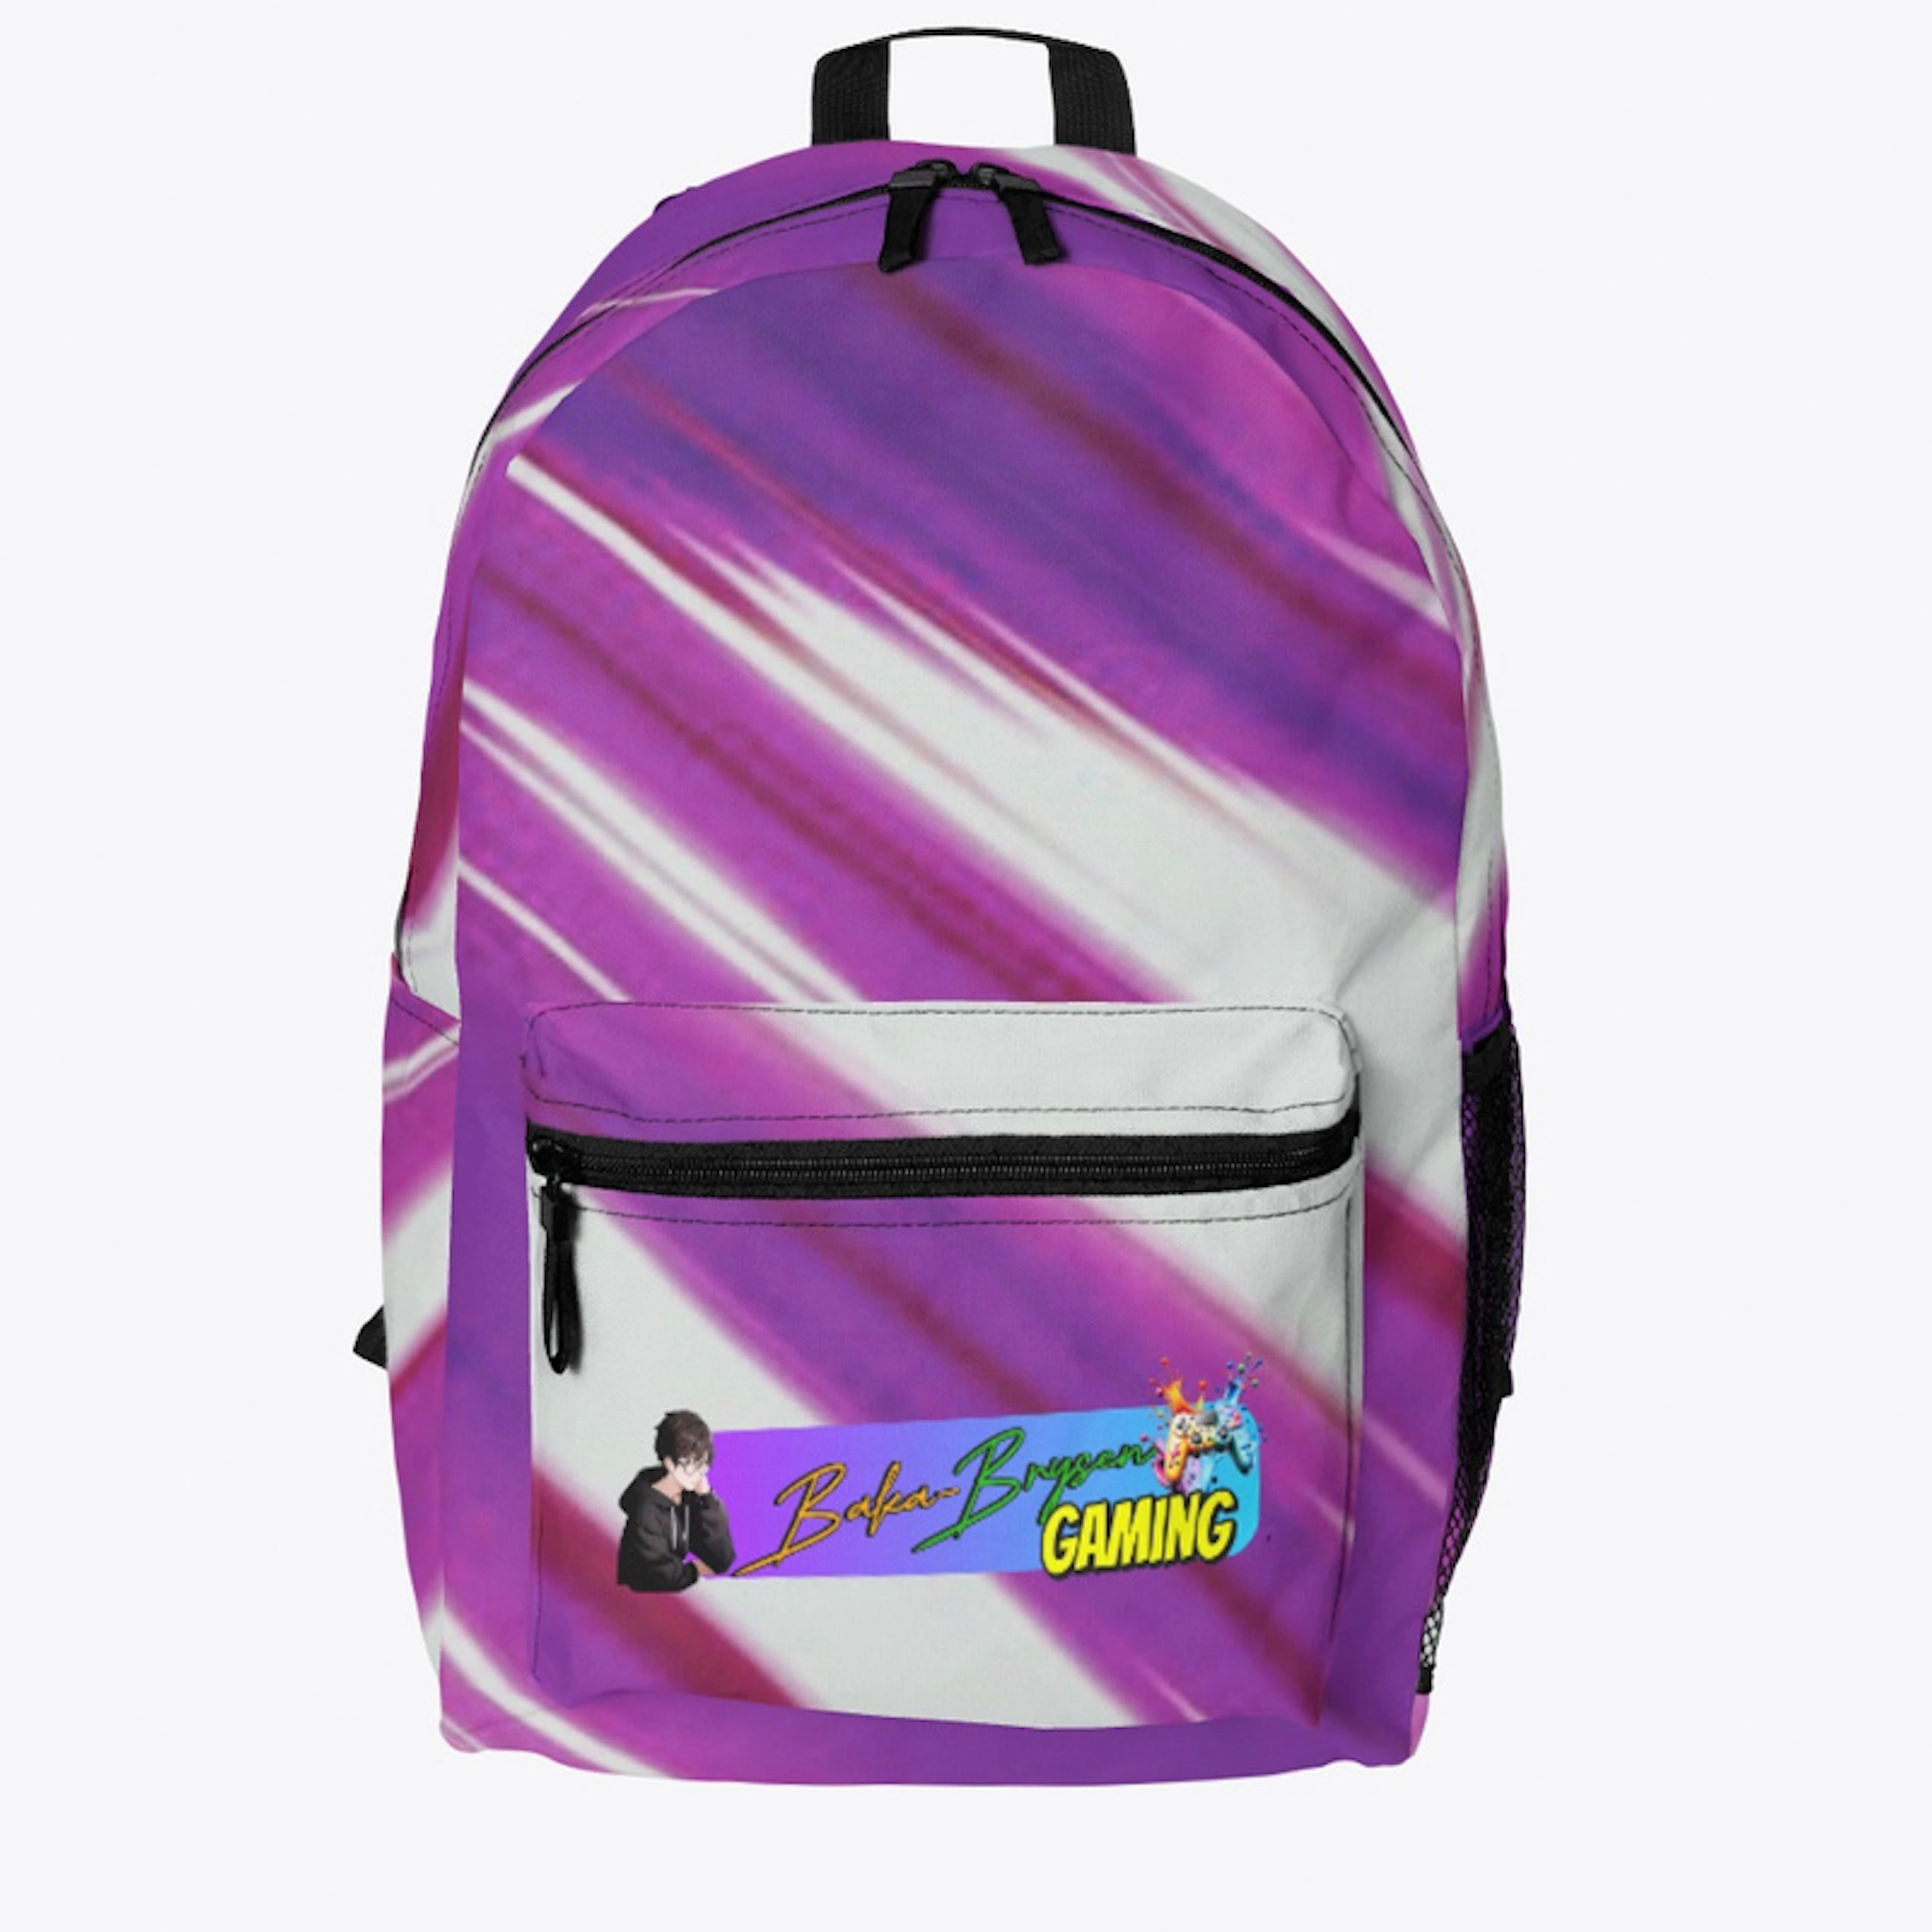 Baka-Brysen's Backpack